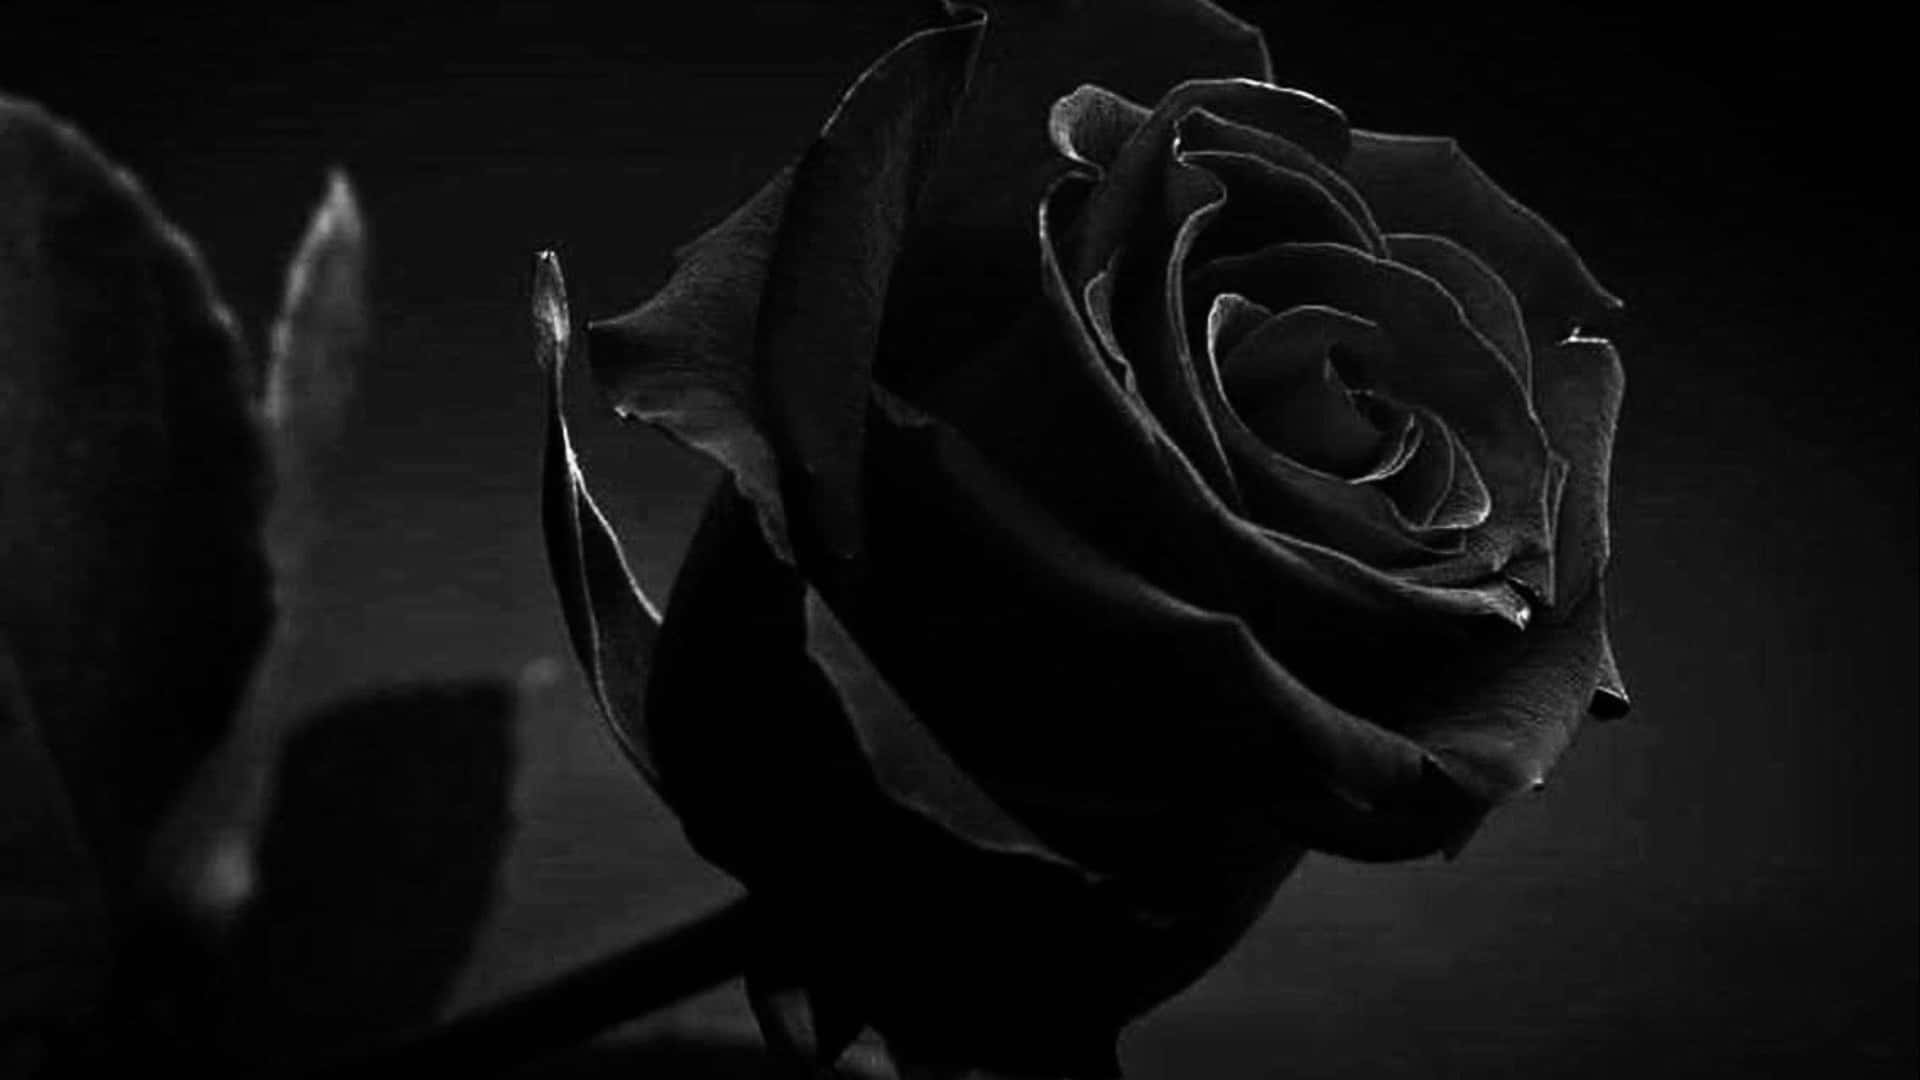 Mitgefühlen Von Leidenschaft Und Geheimnis Versehen, Symbolisiert Diese Beeindruckende Schwarze Rose Bewunderung Und Schönheit.